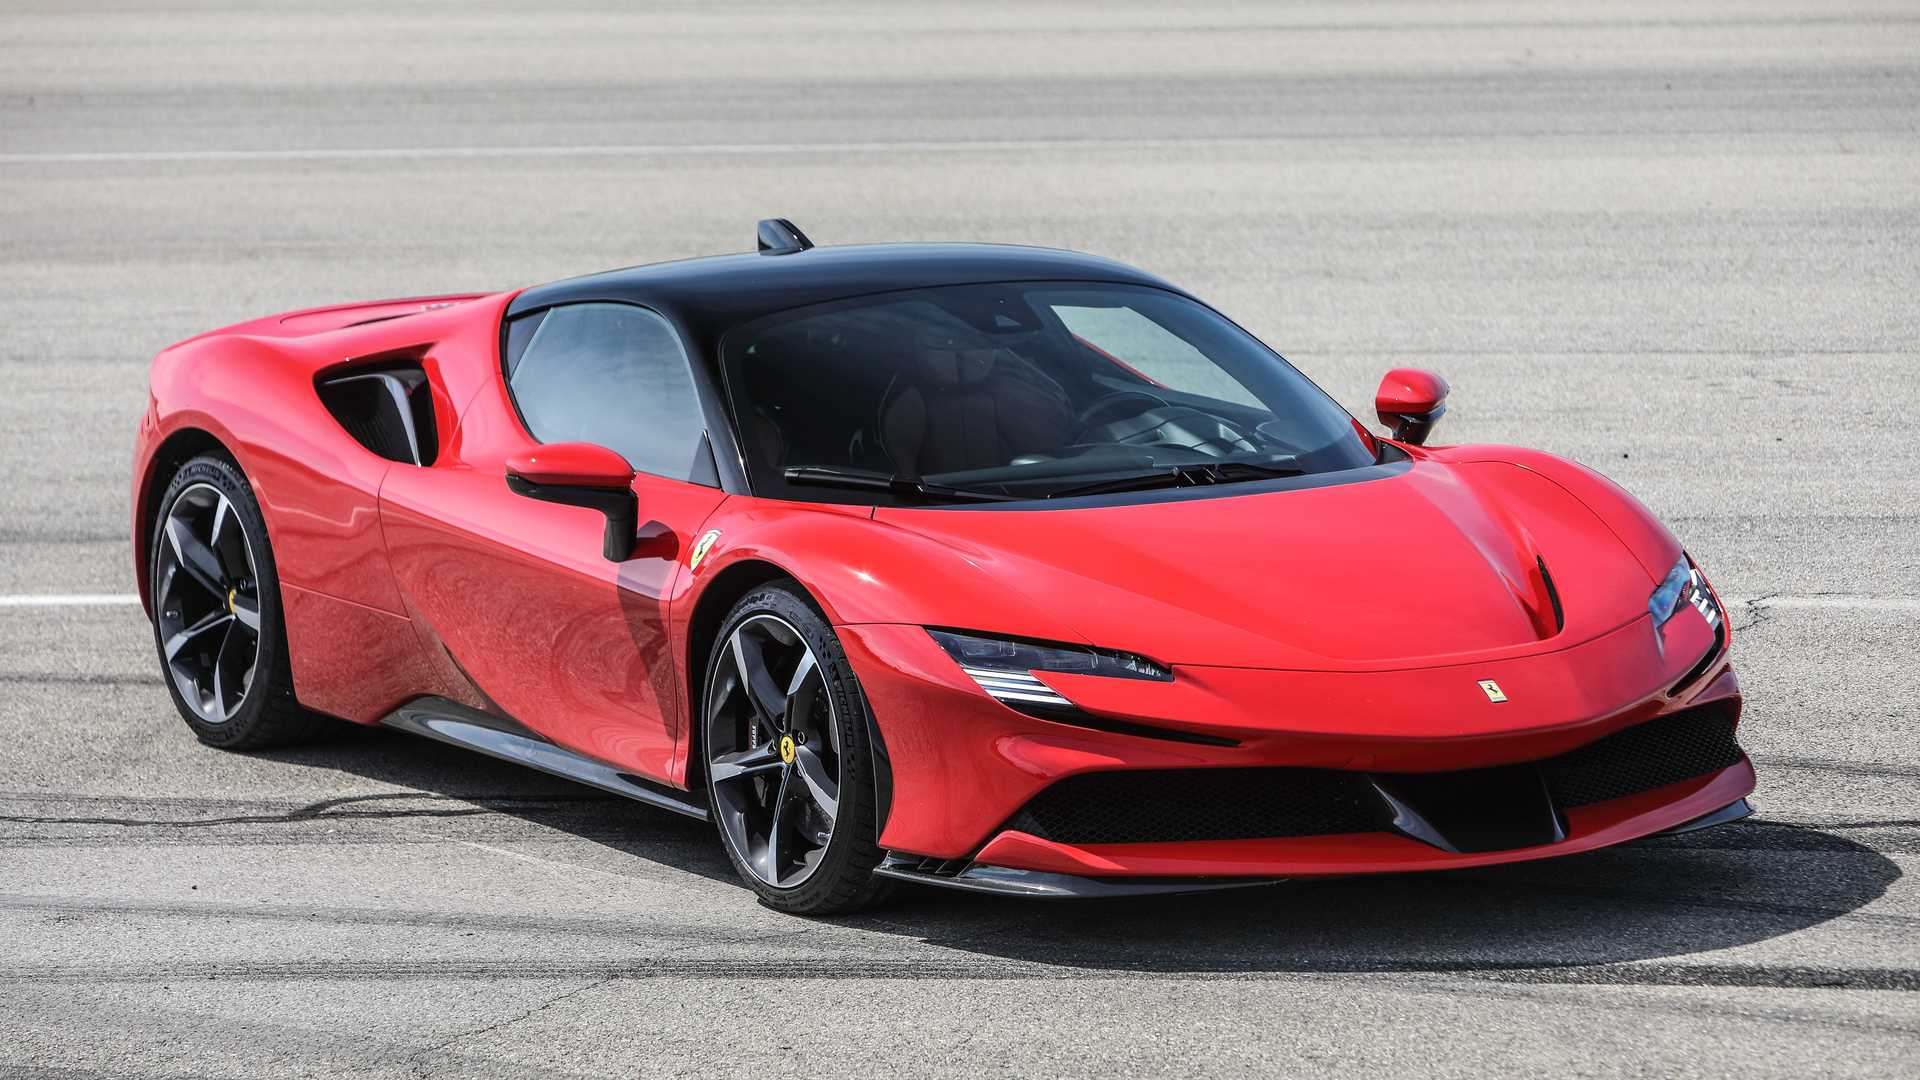 Super-Panne: Ferrari-Erlkönig beim Test zu Schrott gefahren